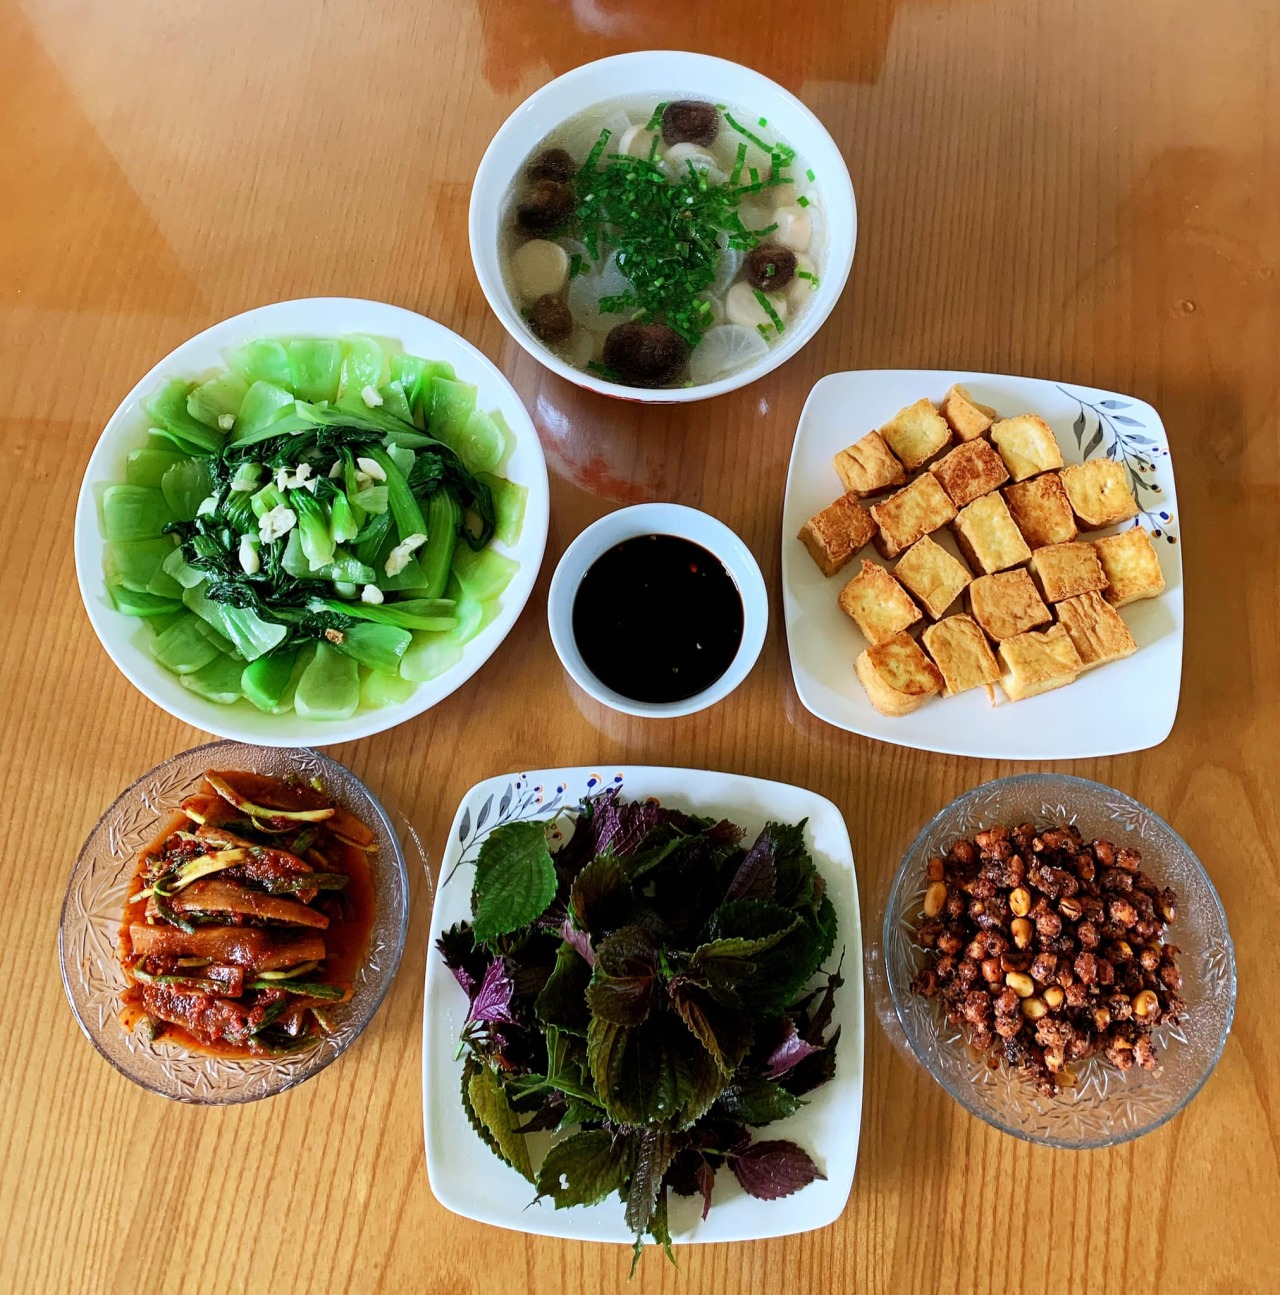 Famicook - Chia sẻ công thức nấu ăn — 8 mâm cơm chay ngon cho bữa cơm gia đình